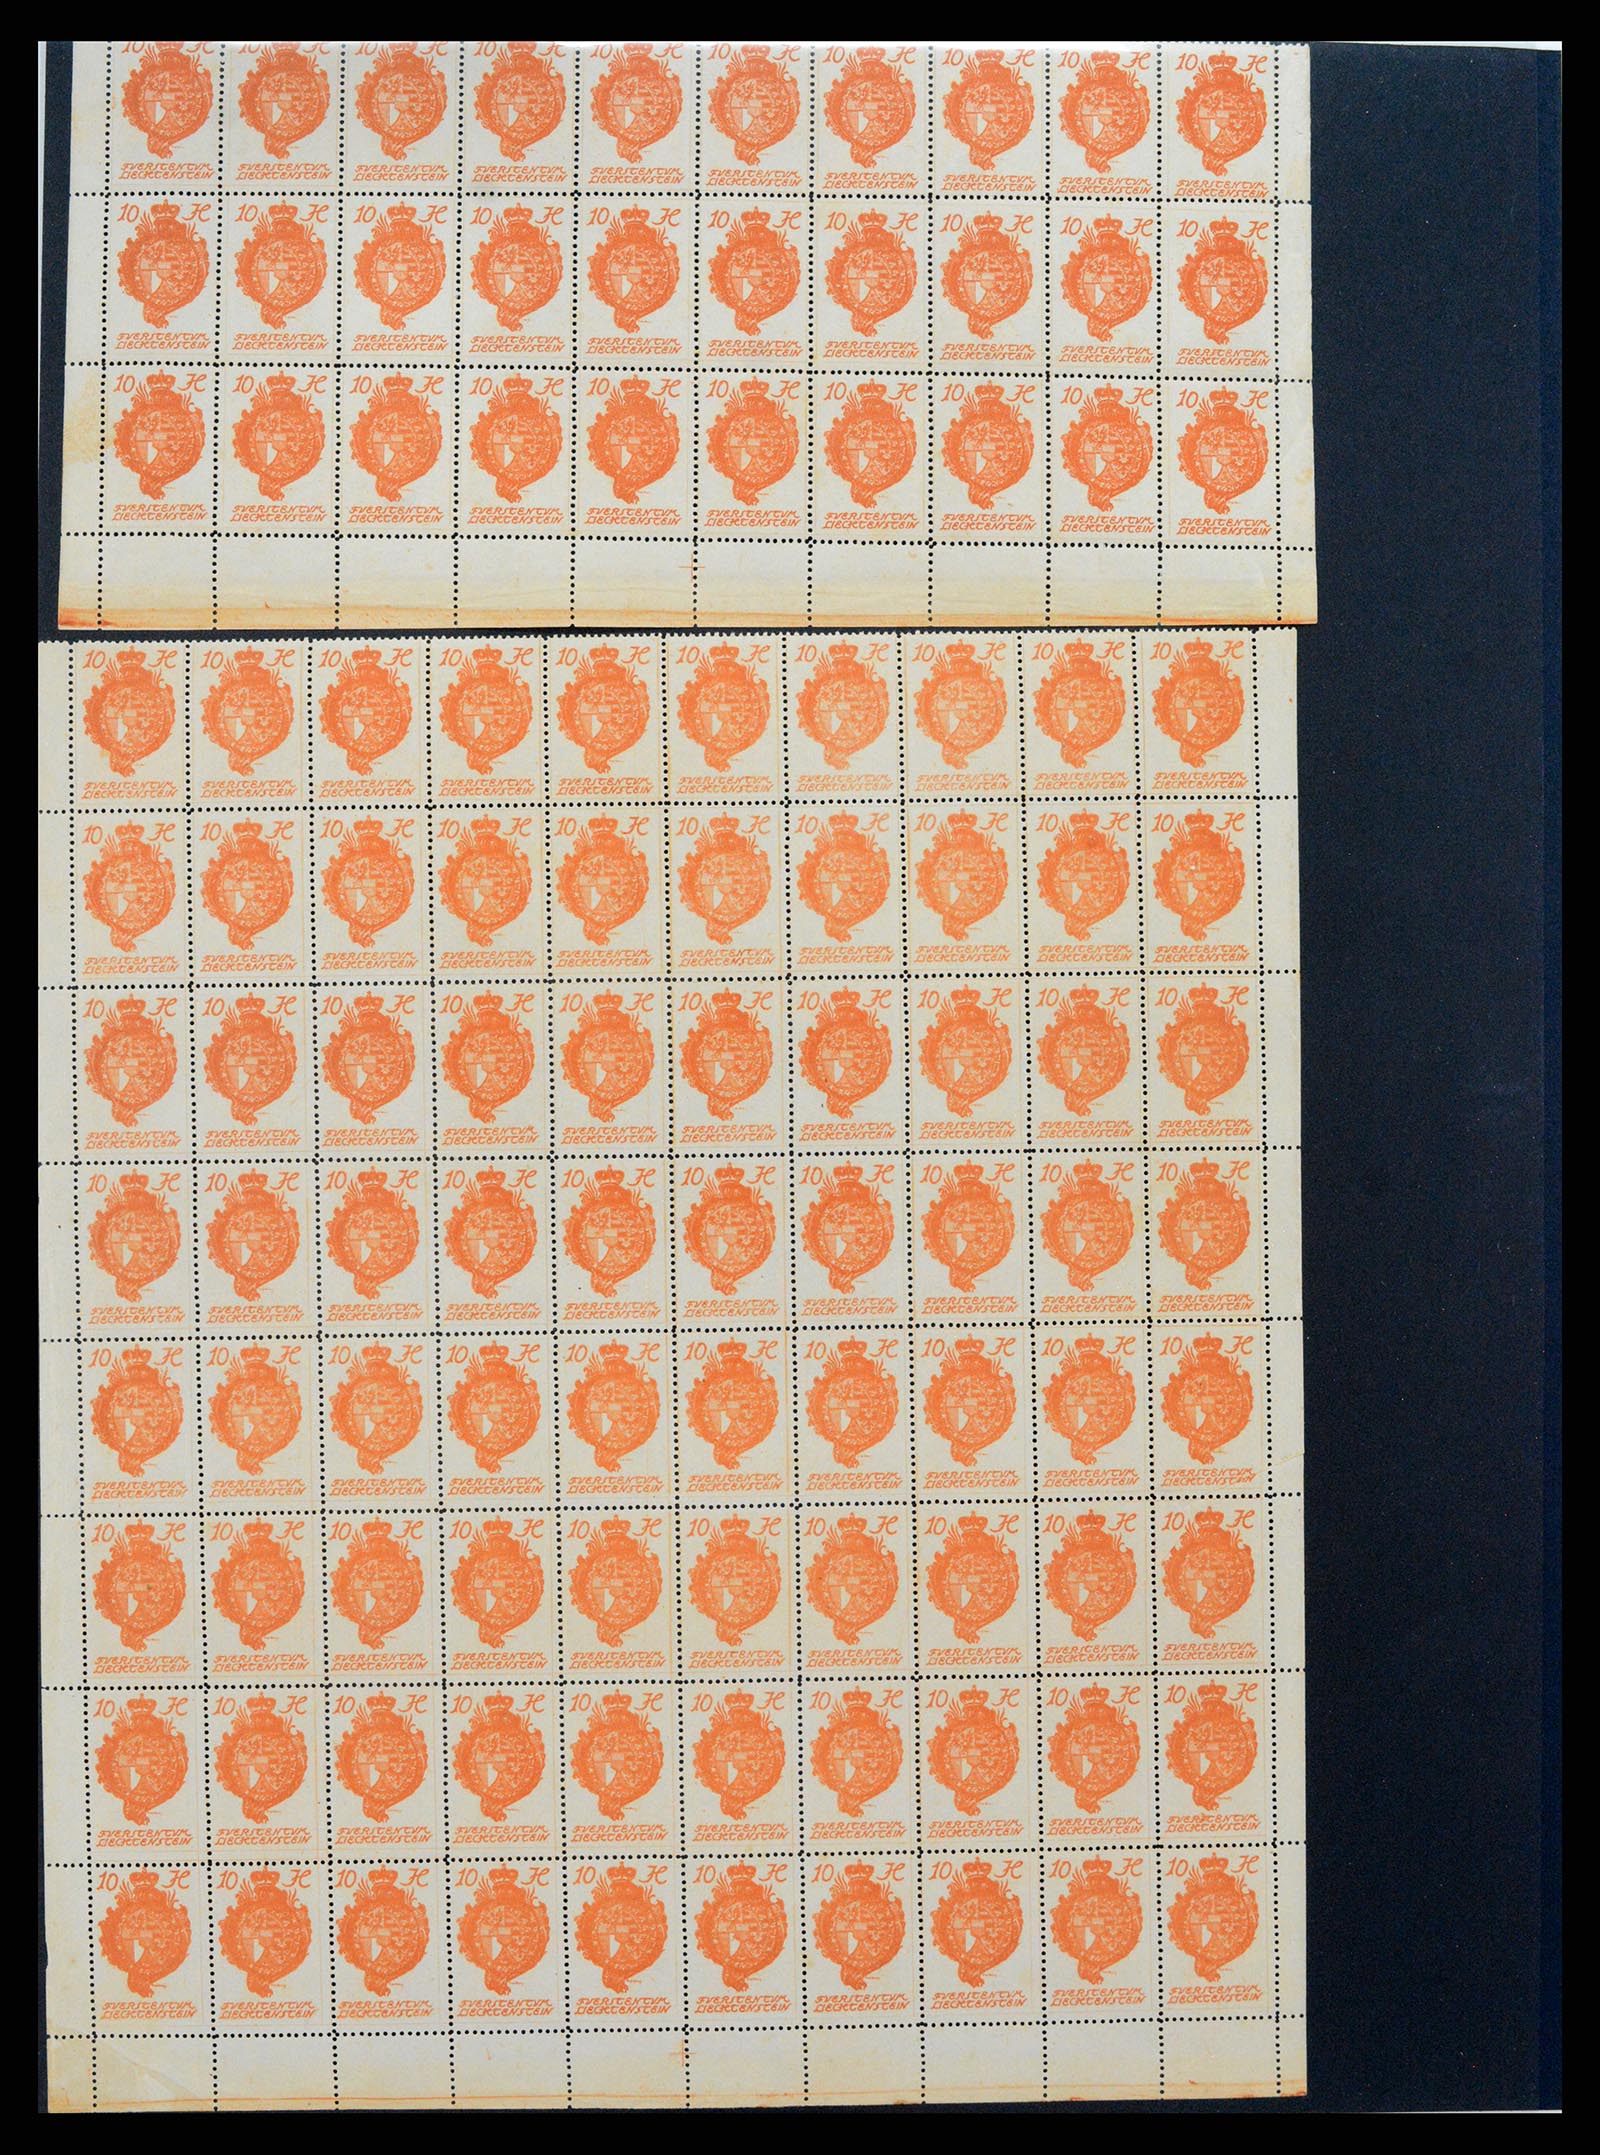 37150 1671 - Stamp collection 37150 Liechtenstein supercollection 1912-1962.